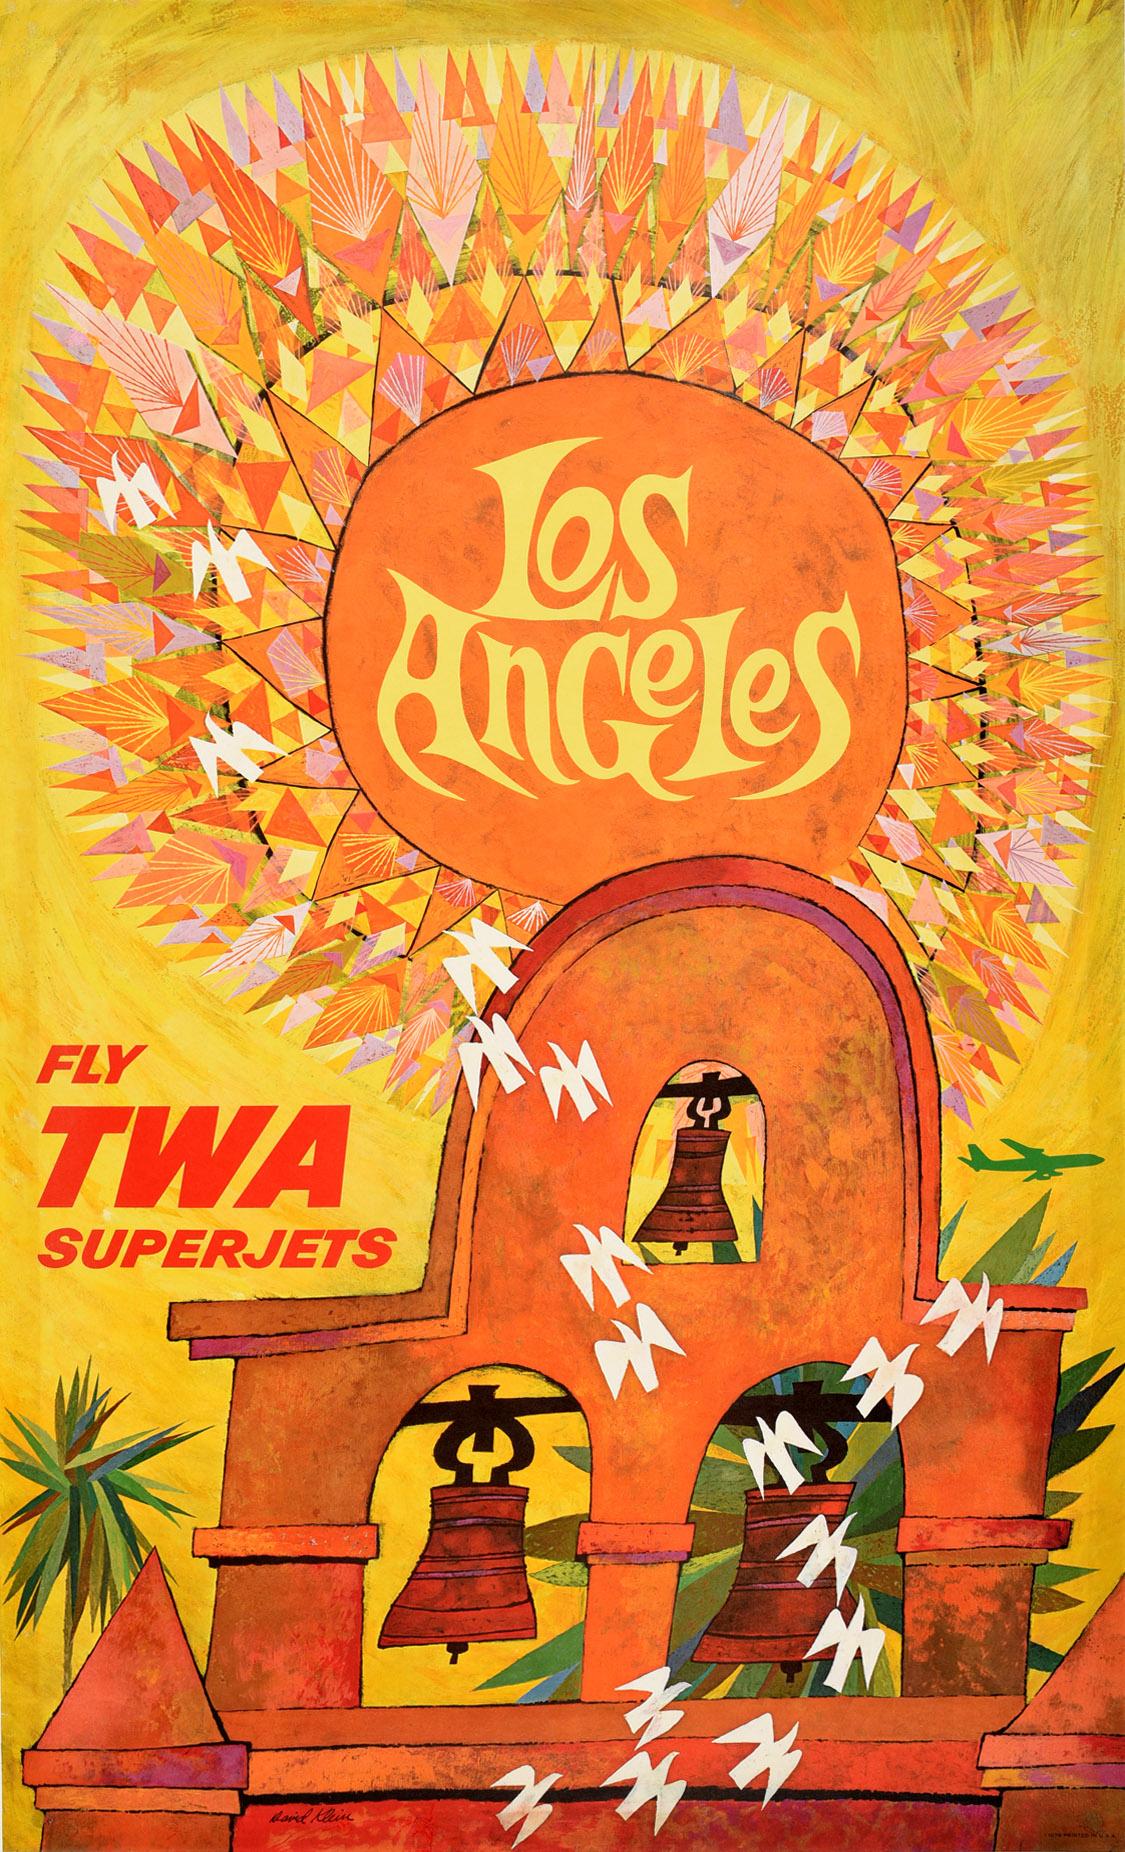 David Klein Print - Original Vintage Poster Los Angeles Fly TWA Superjets Mission Bells Travel Art